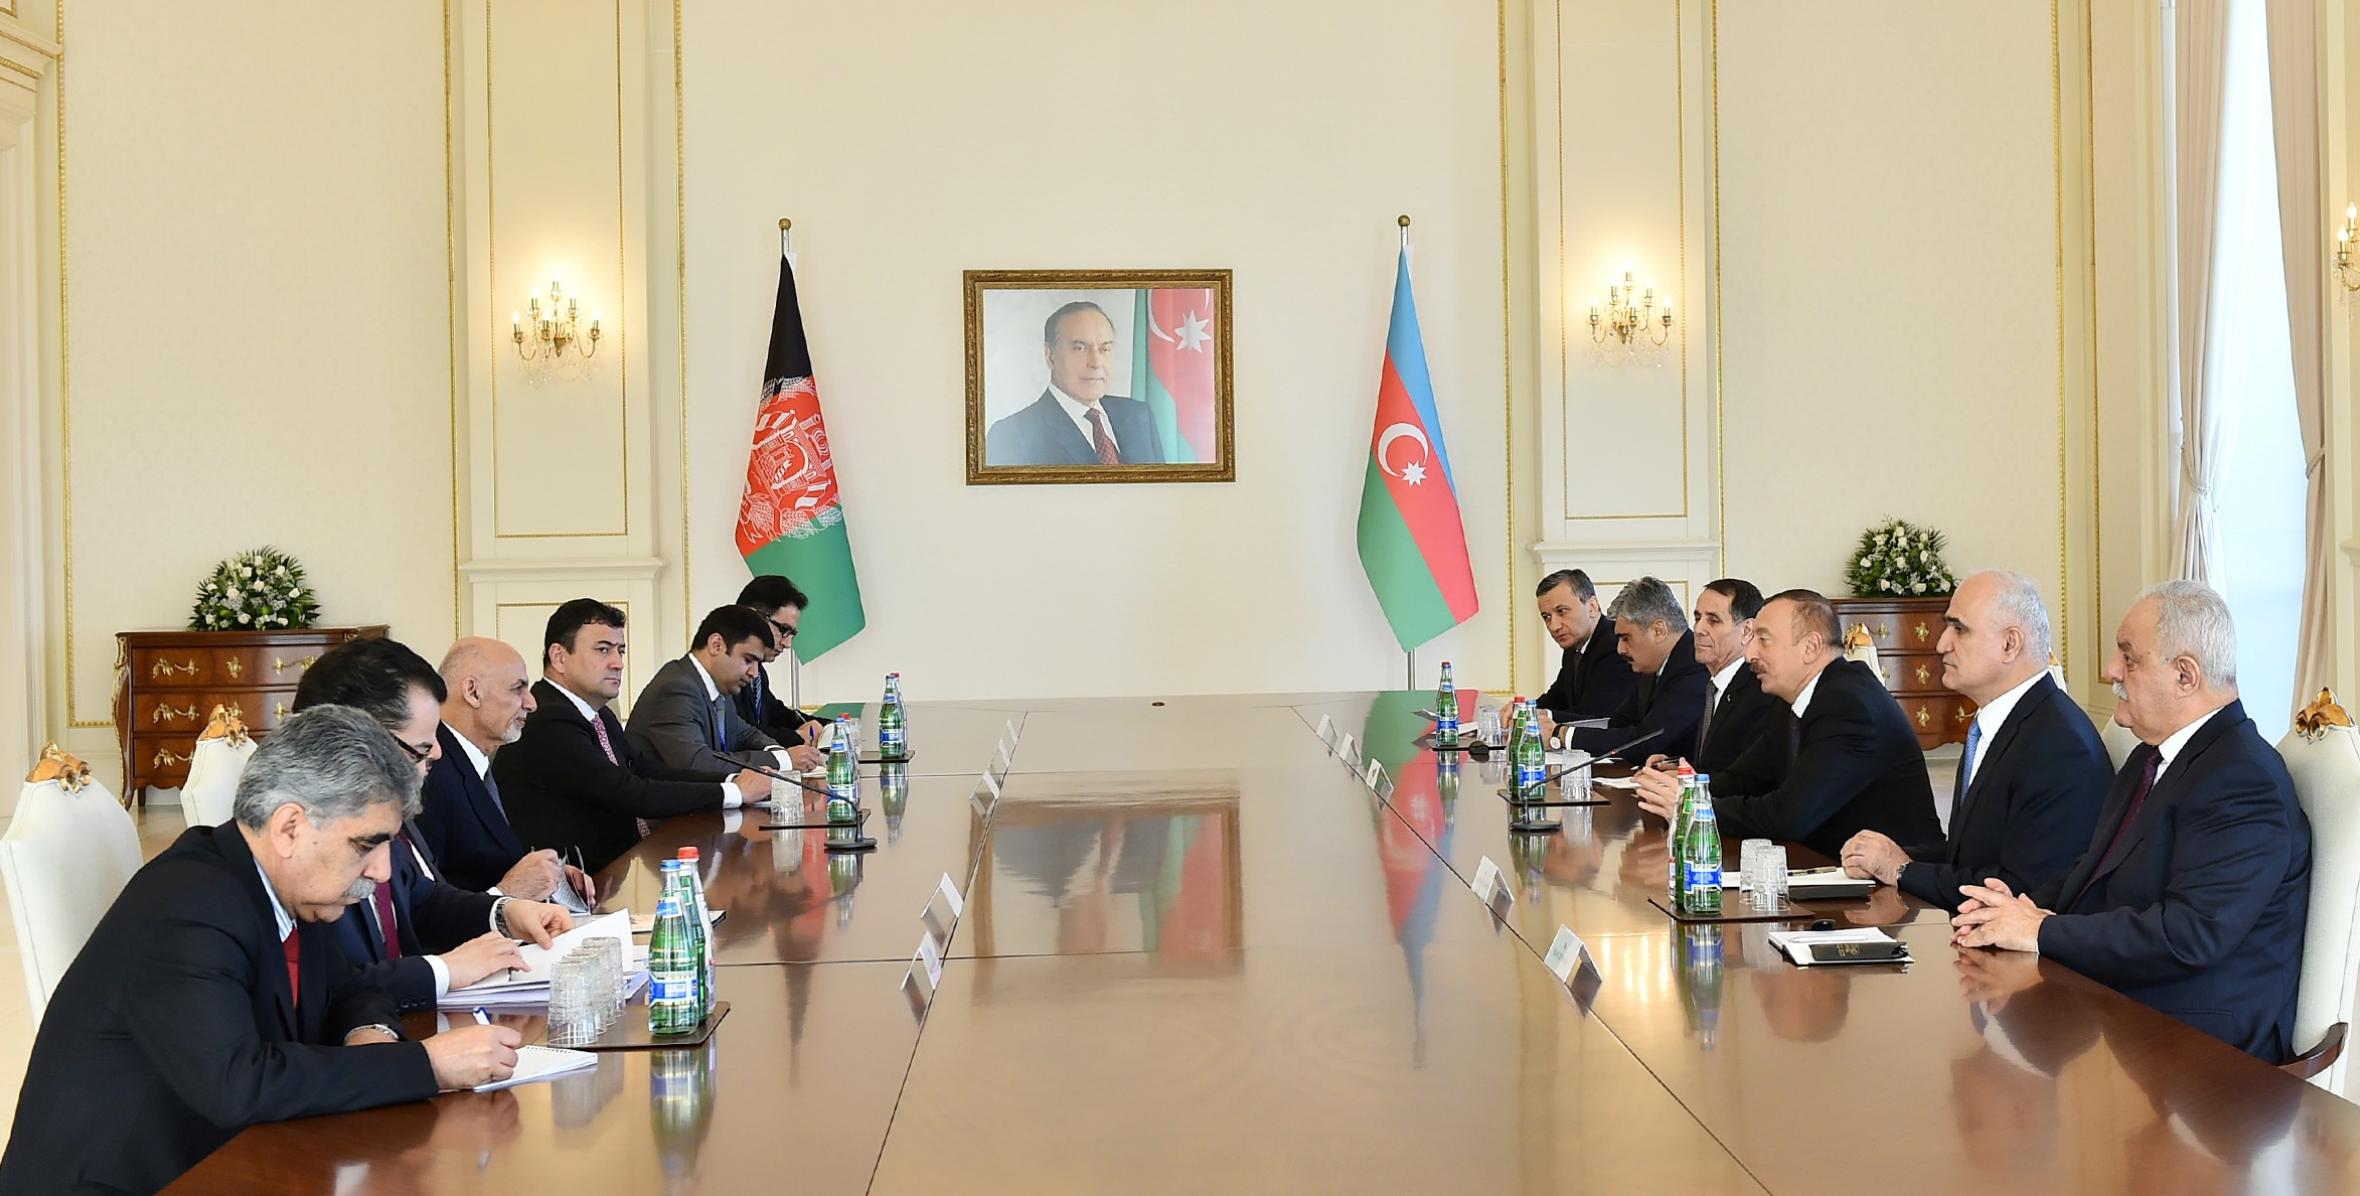 Состоялась встреча Ильхама Алиева и Президента Исламской Республики Афганистан Мохаммада Ашрафа Гани в расширенном составе с участием делегаций